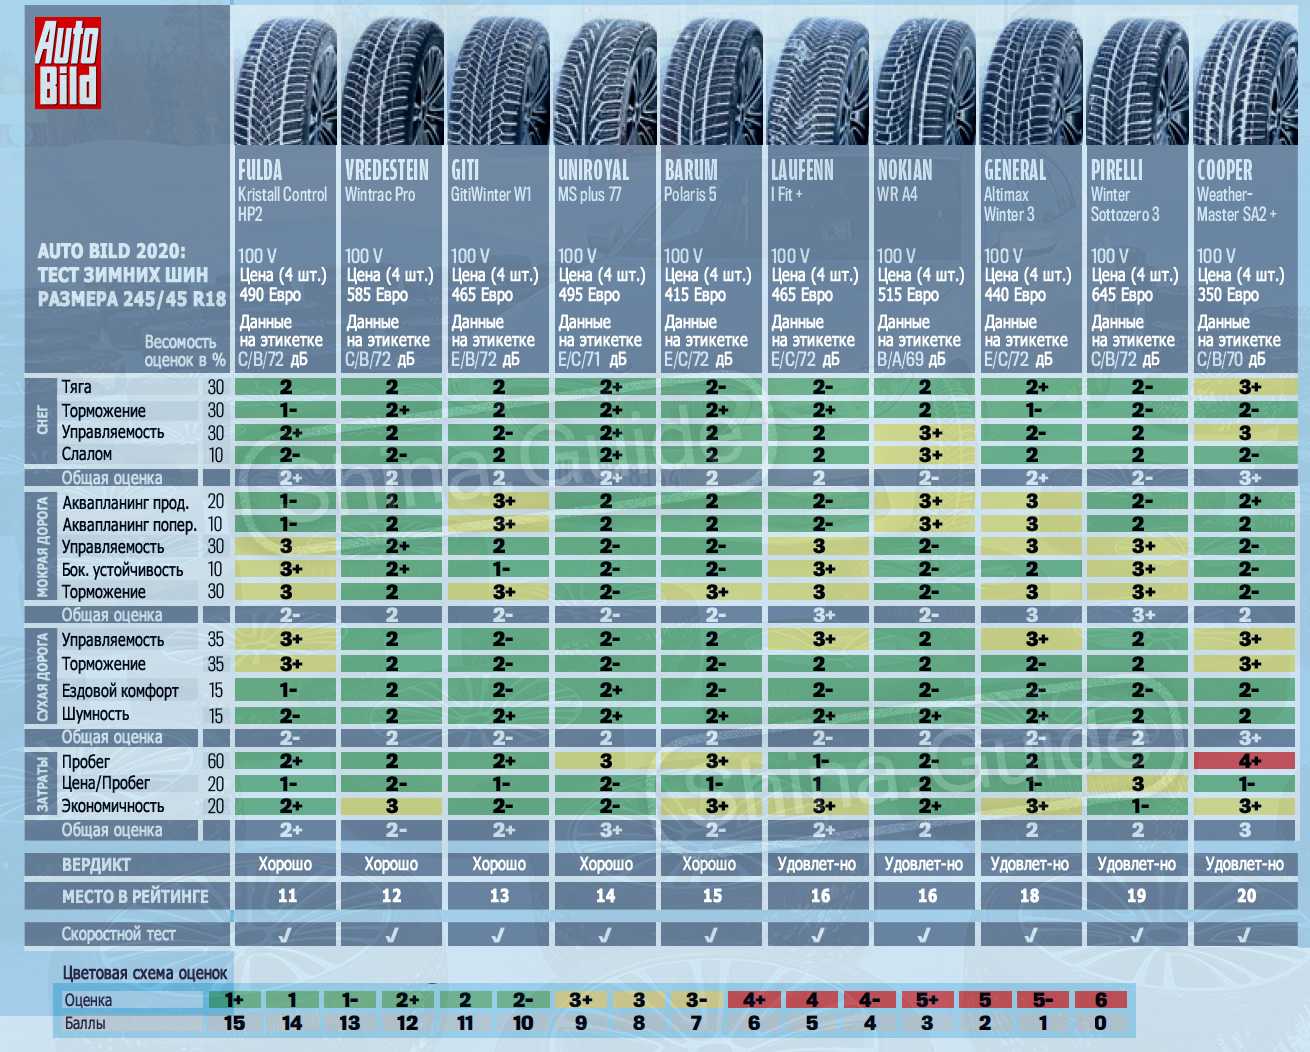 👍 лучшие внедорожные шины (рейтинг топ-5 2020-2021 по отзывам покупателей)